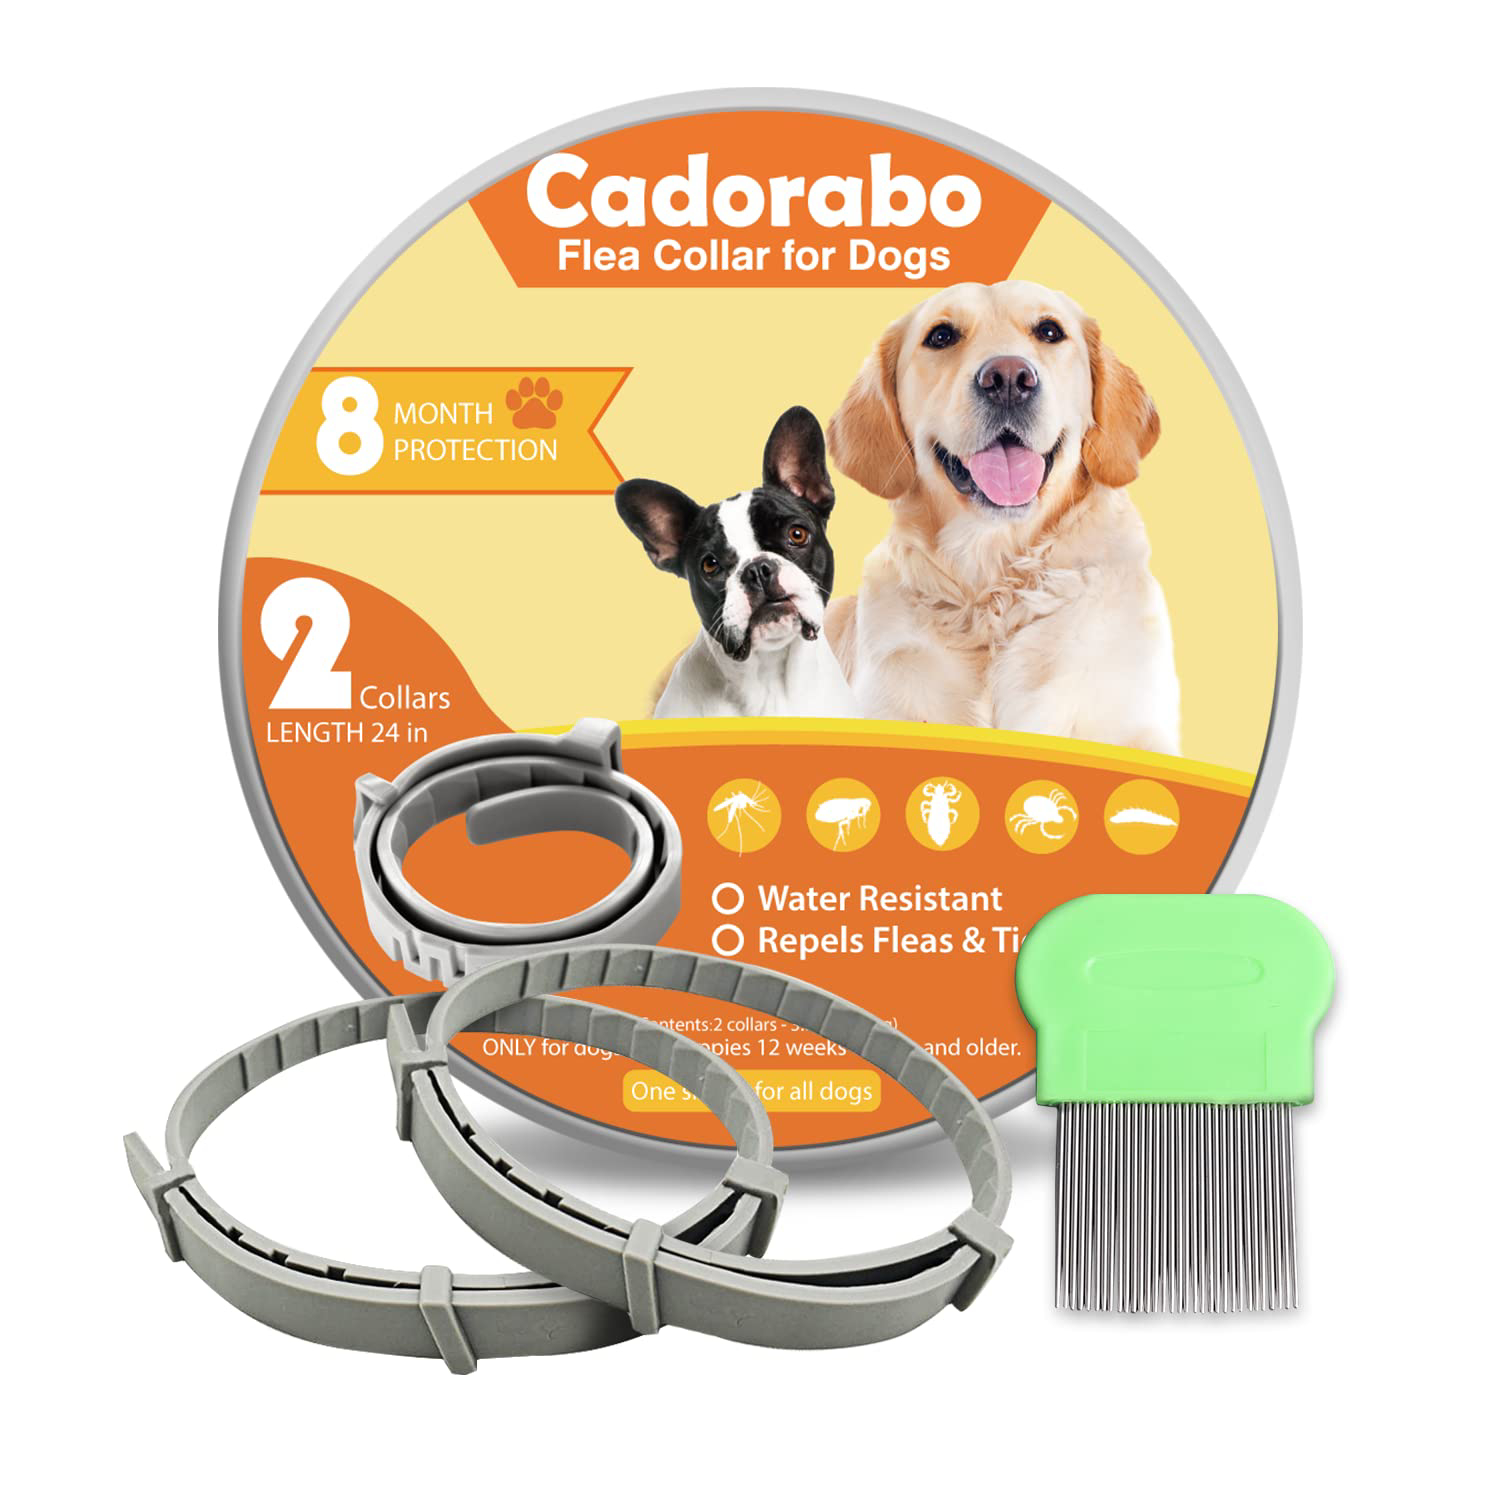 Cadorabo Flea and Tick Collar